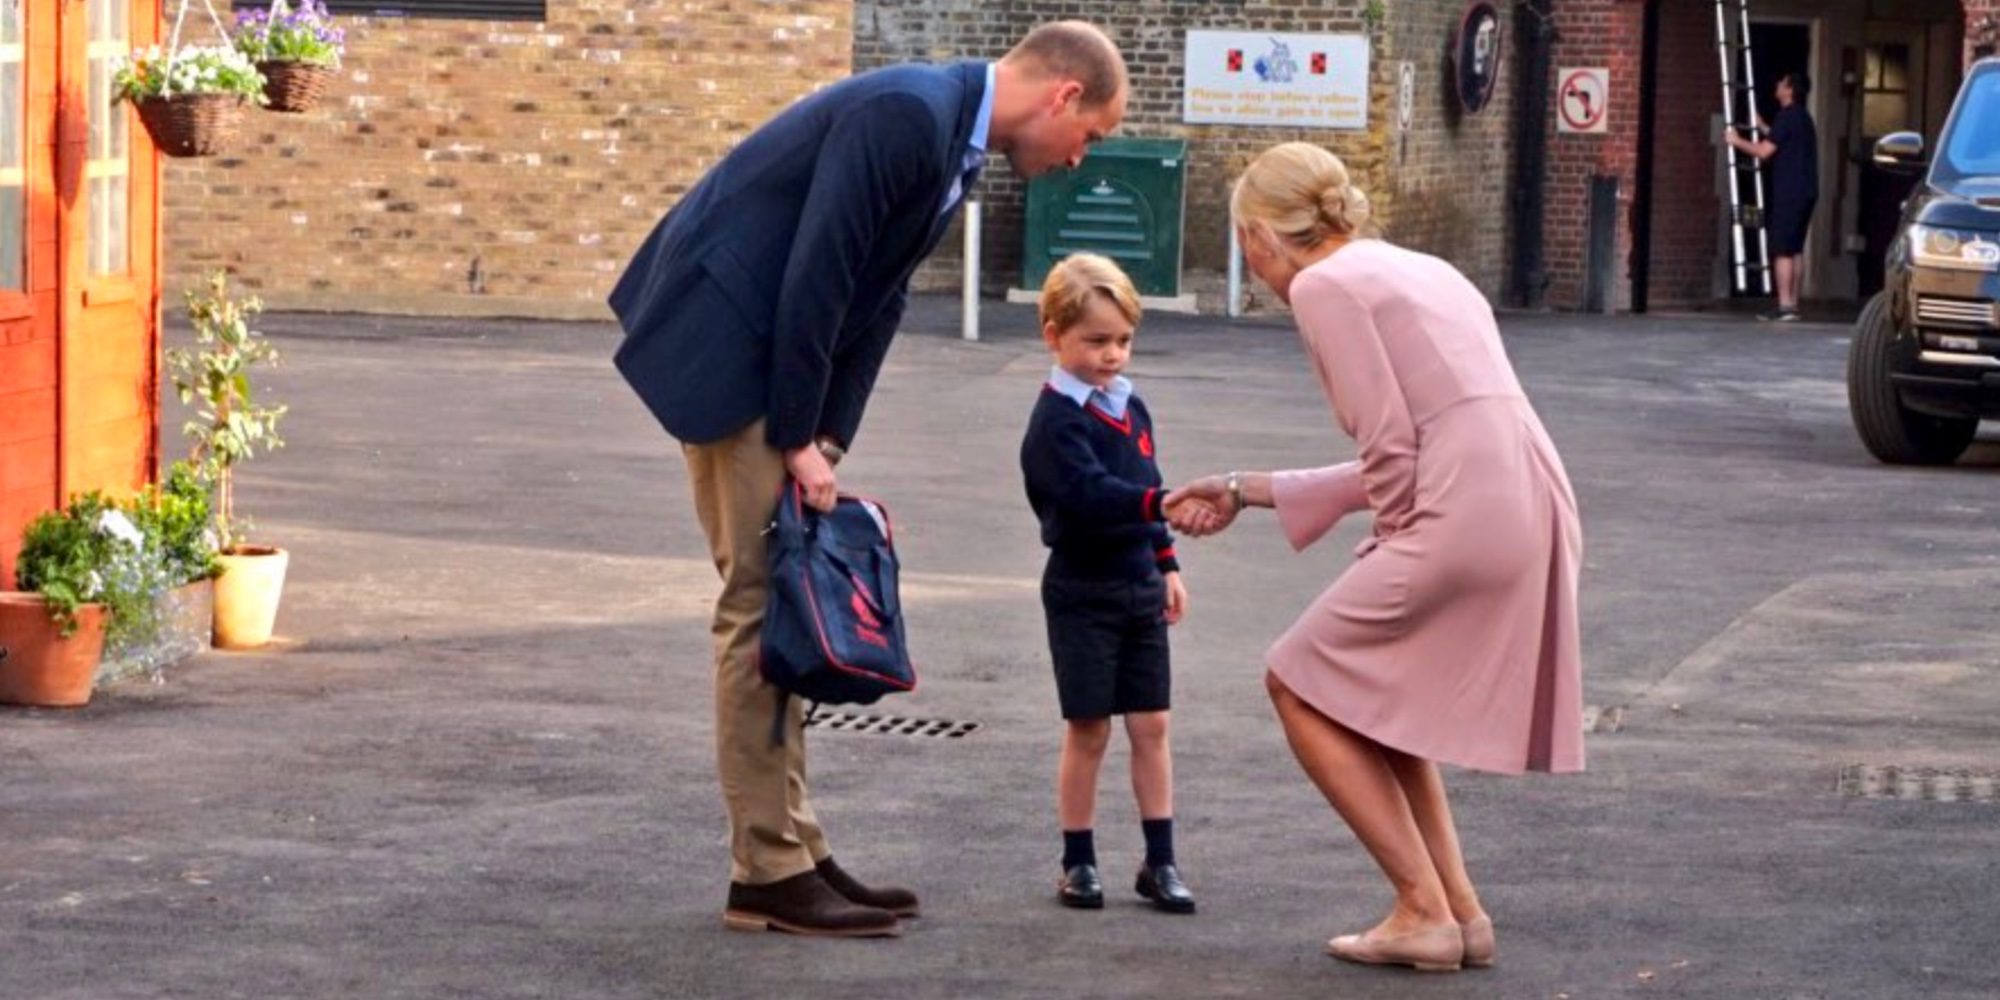 El Príncipe Jorge, muy serio y formal en su primer día de colegio en Thomas's Battersea